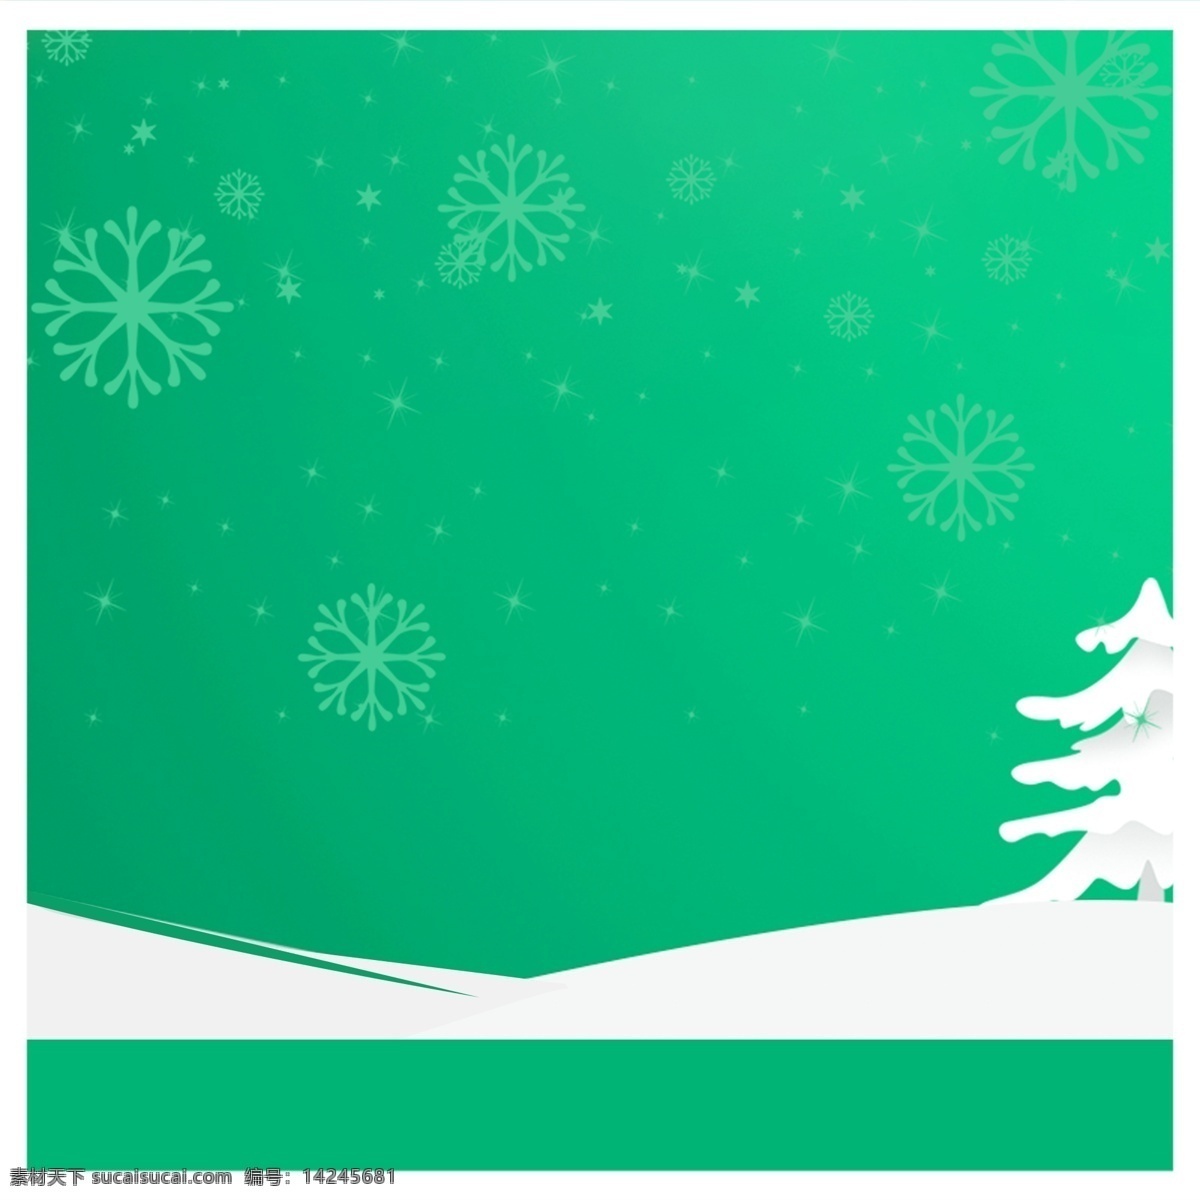 绿色 圣诞 主 图 背景 雪花 雪树 绿色背景 圣诞背景 主图背景 背景素材 直通车